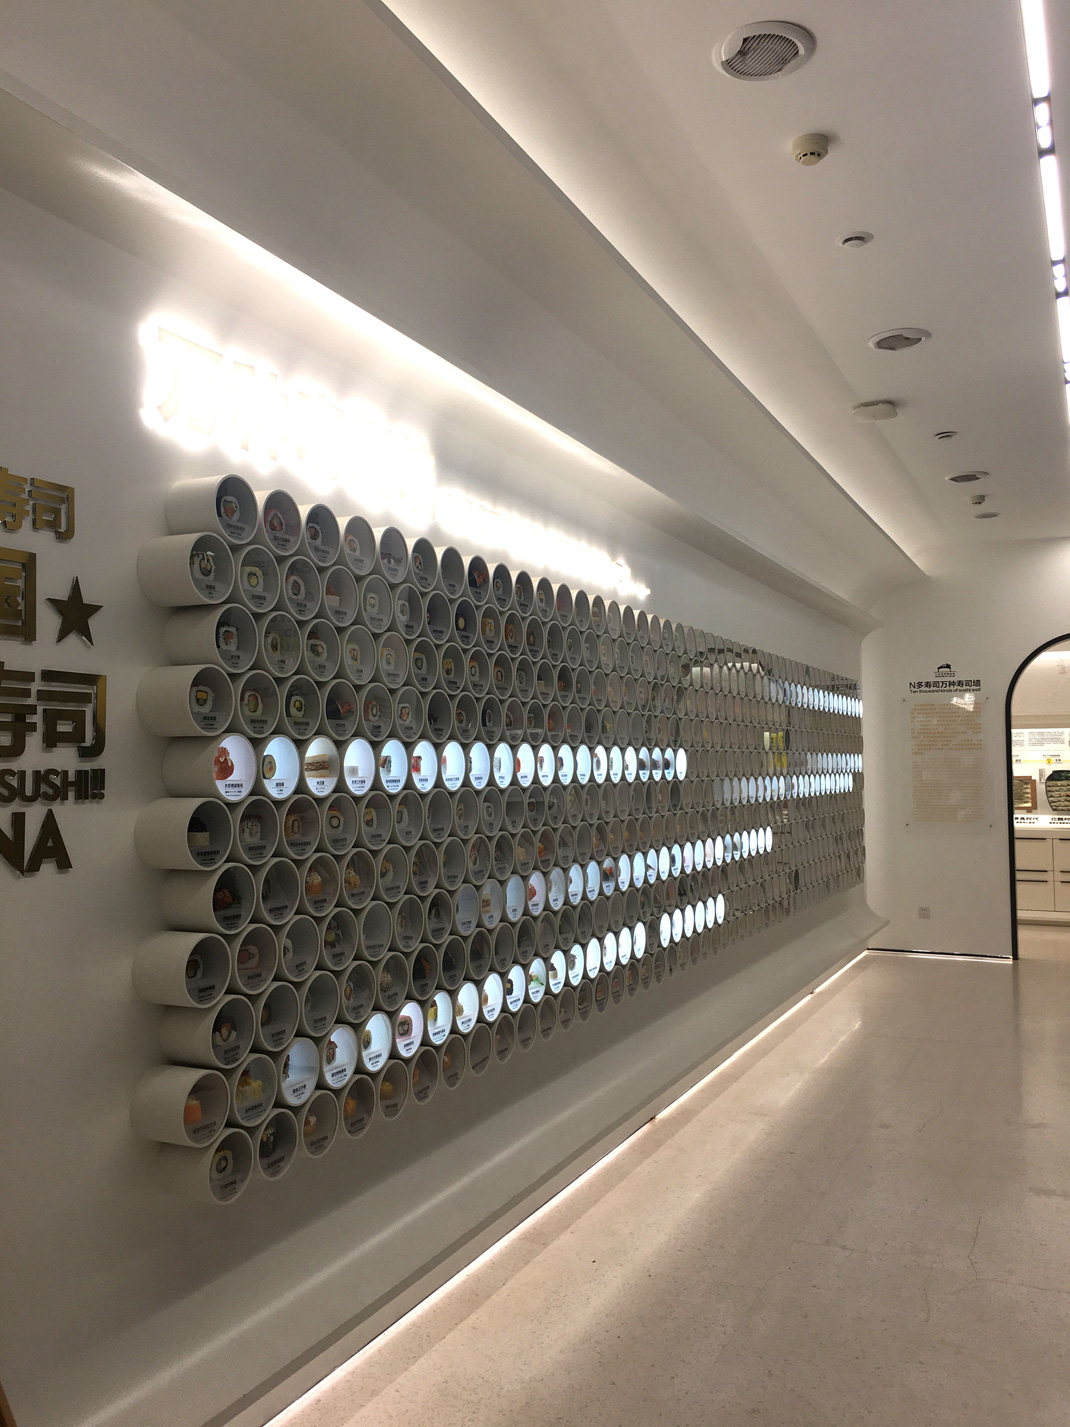 寿司博物馆 江苏 无锡 寿司 博物馆 插画设计 logo设计 vi设计 空间设计